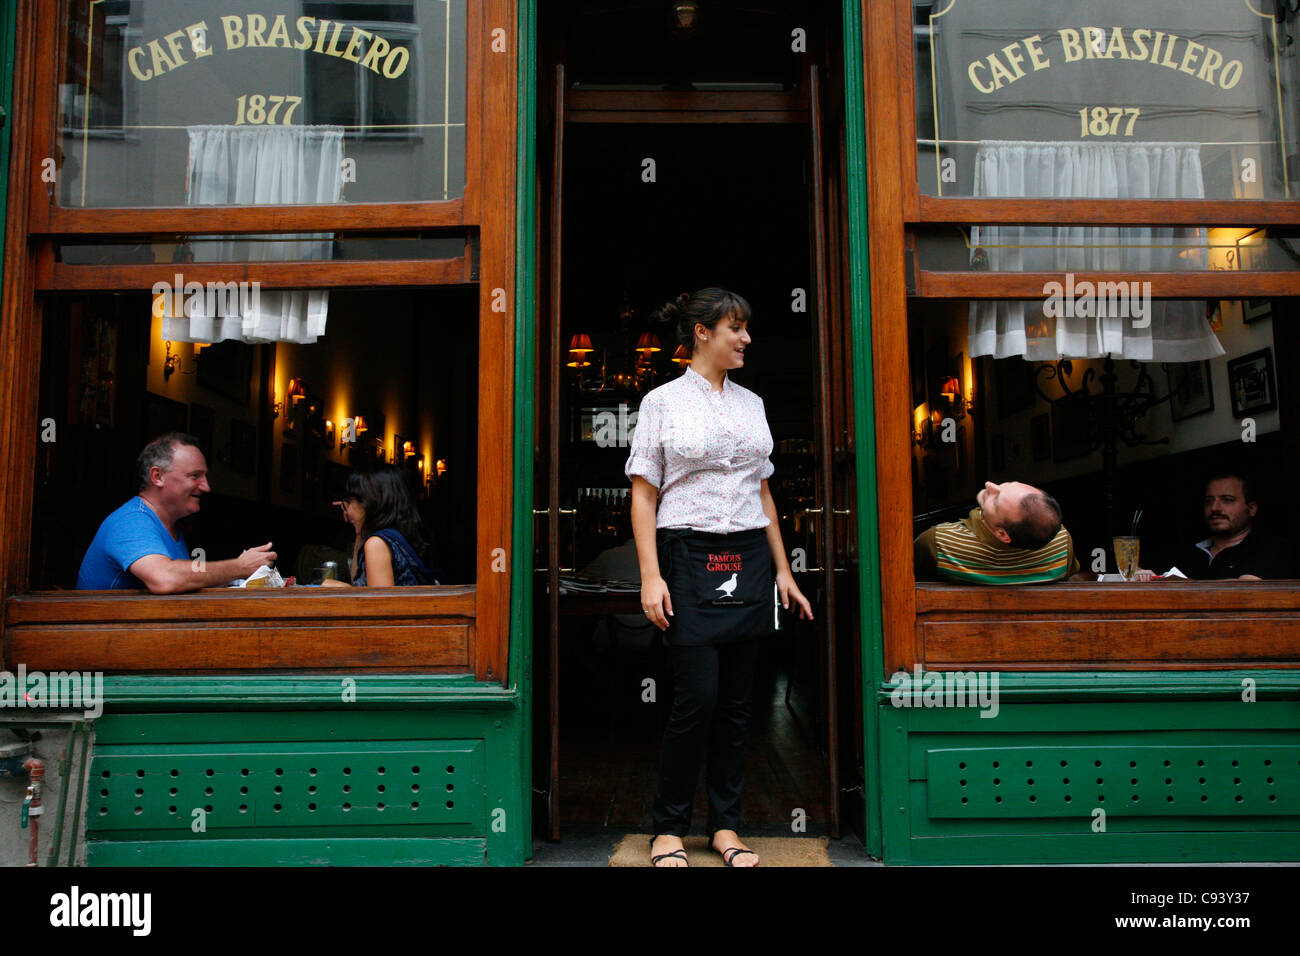 Cafe Brasilero in the old town, Montevideo, Uruguay. Stock Photo